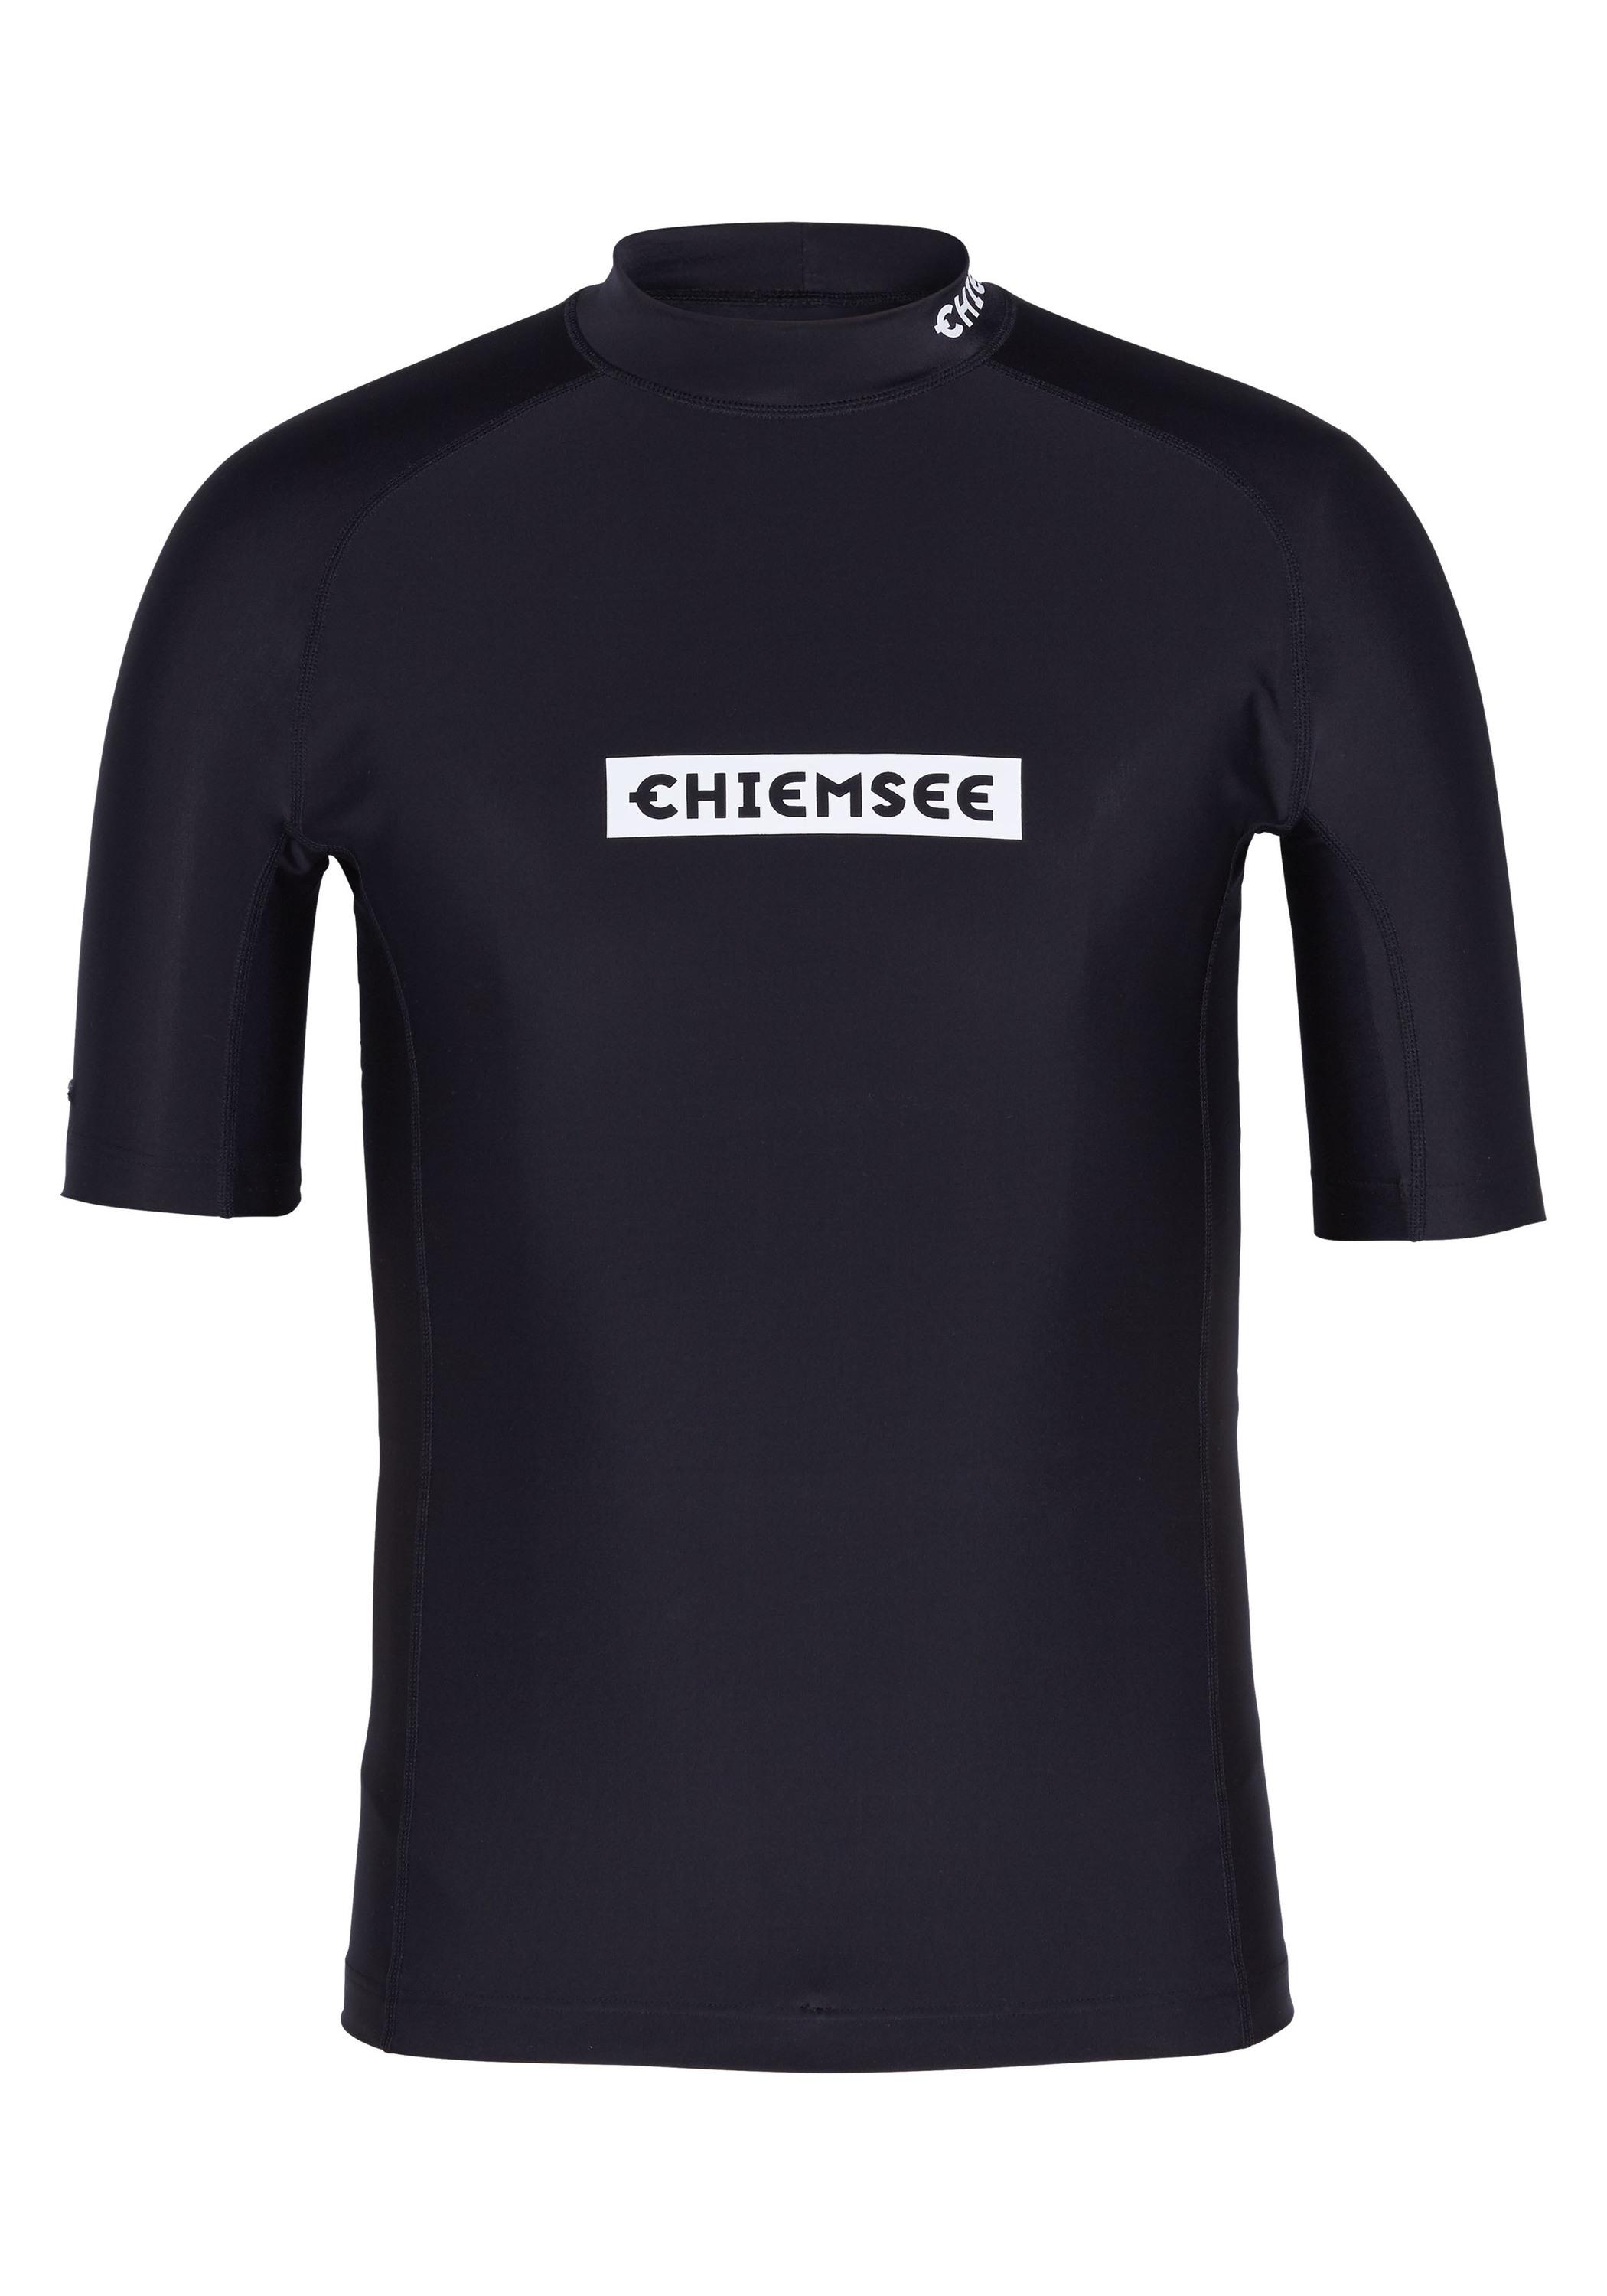 SportScheck Shop Surf Badeshirt Online Chiemsee von kaufen im Deep Shirt new Black